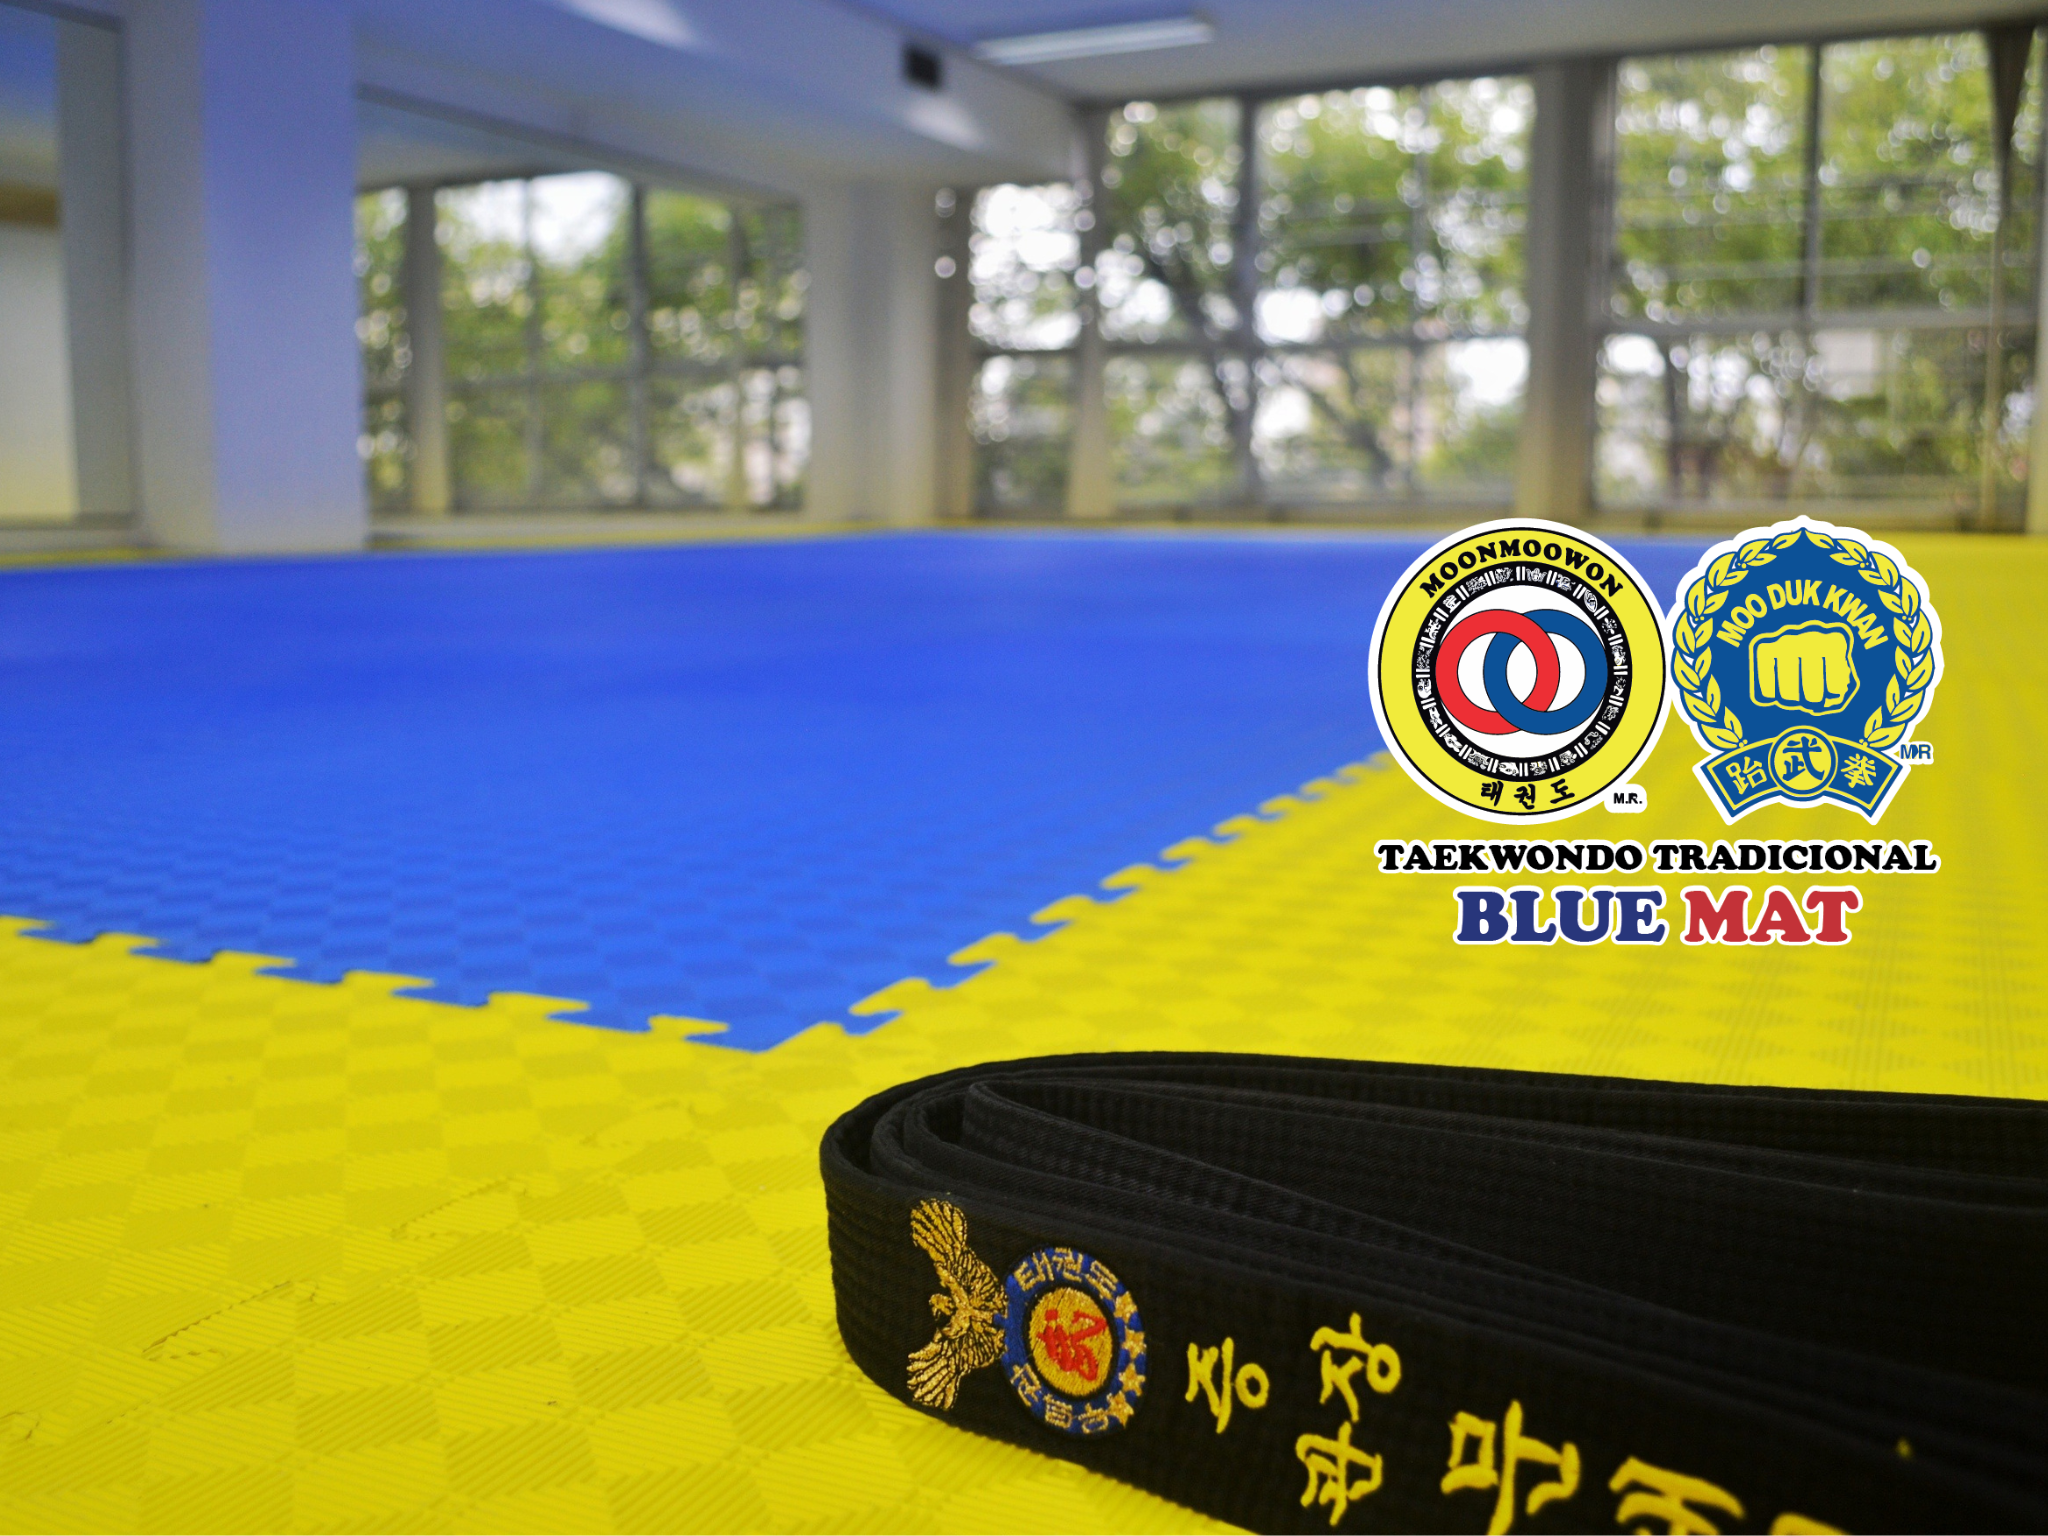 Aprende Taekwondo en dojang escuela Moon Moo won Moo Duk Kwan Blue Mat